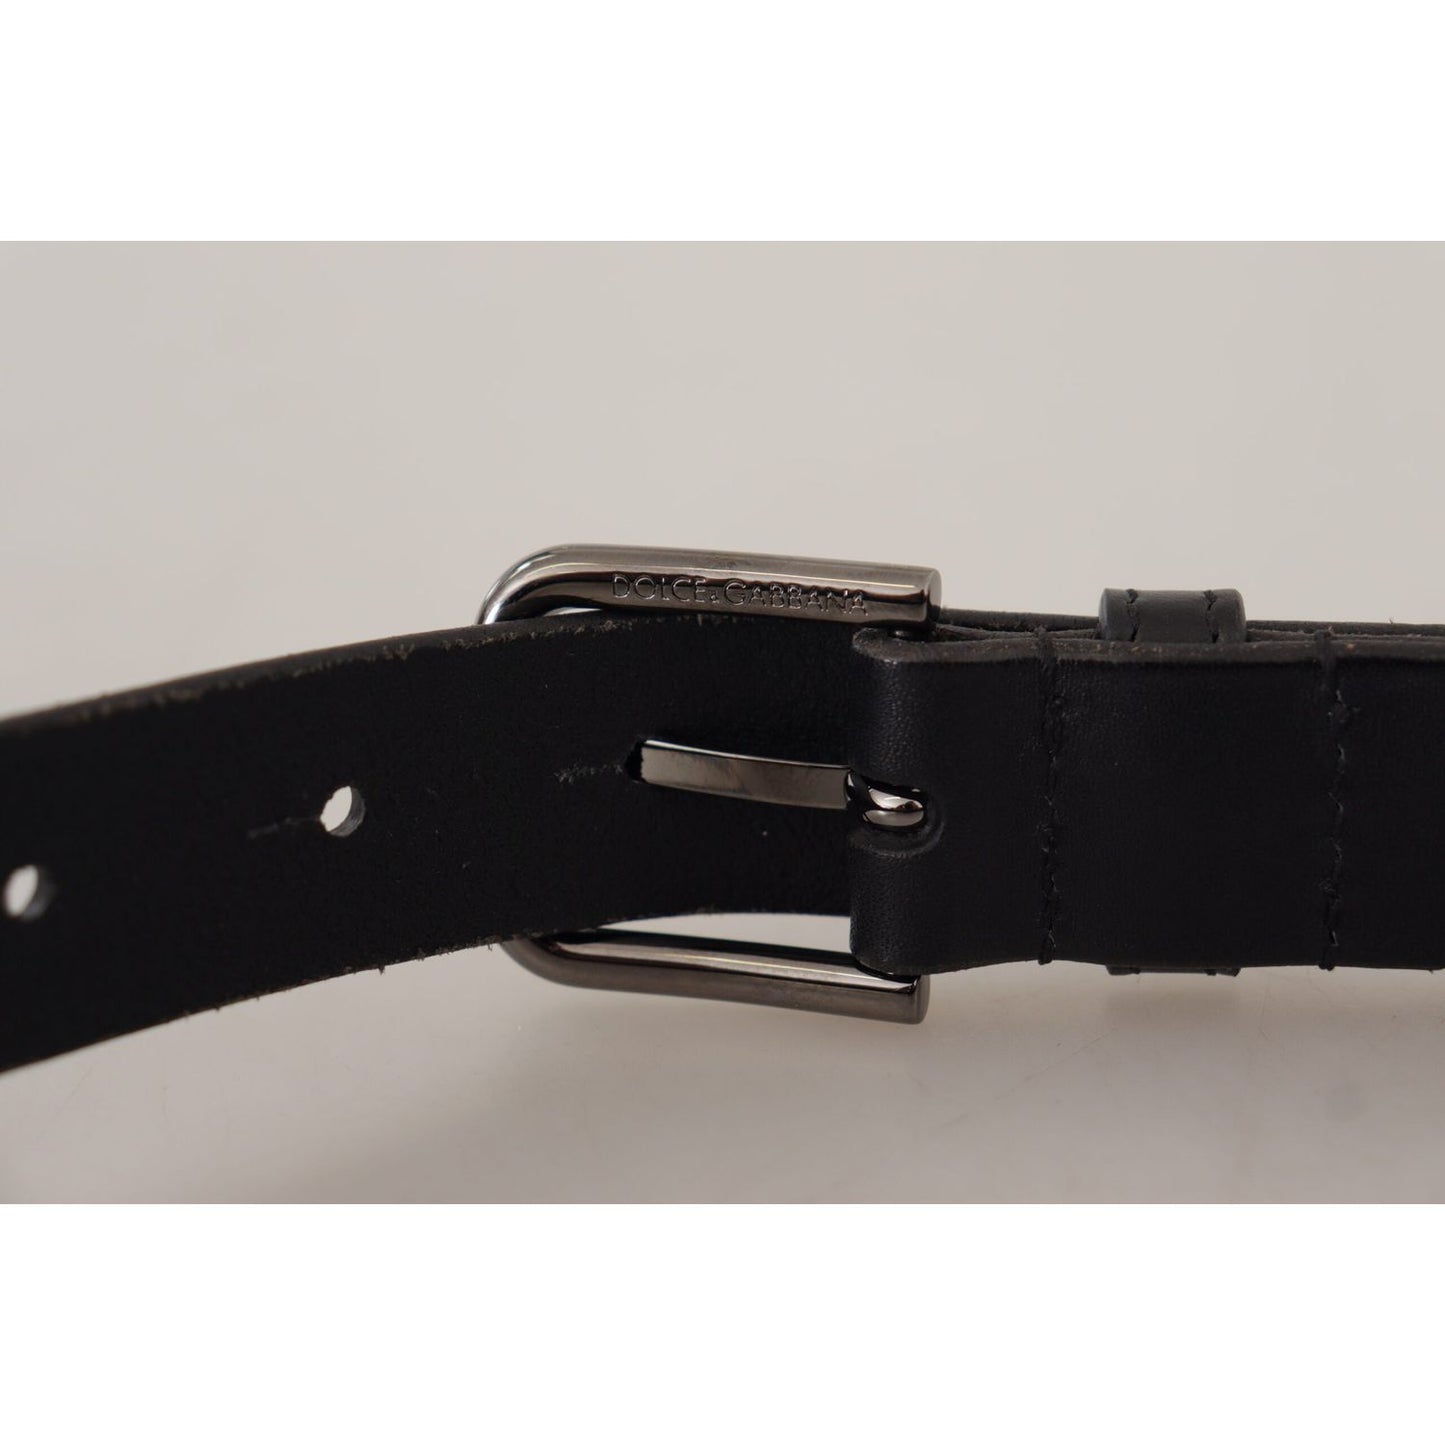 Dolce & GabbanaElegant Black Leather Belt with Metal BuckleMcRichard Designer Brands£259.00